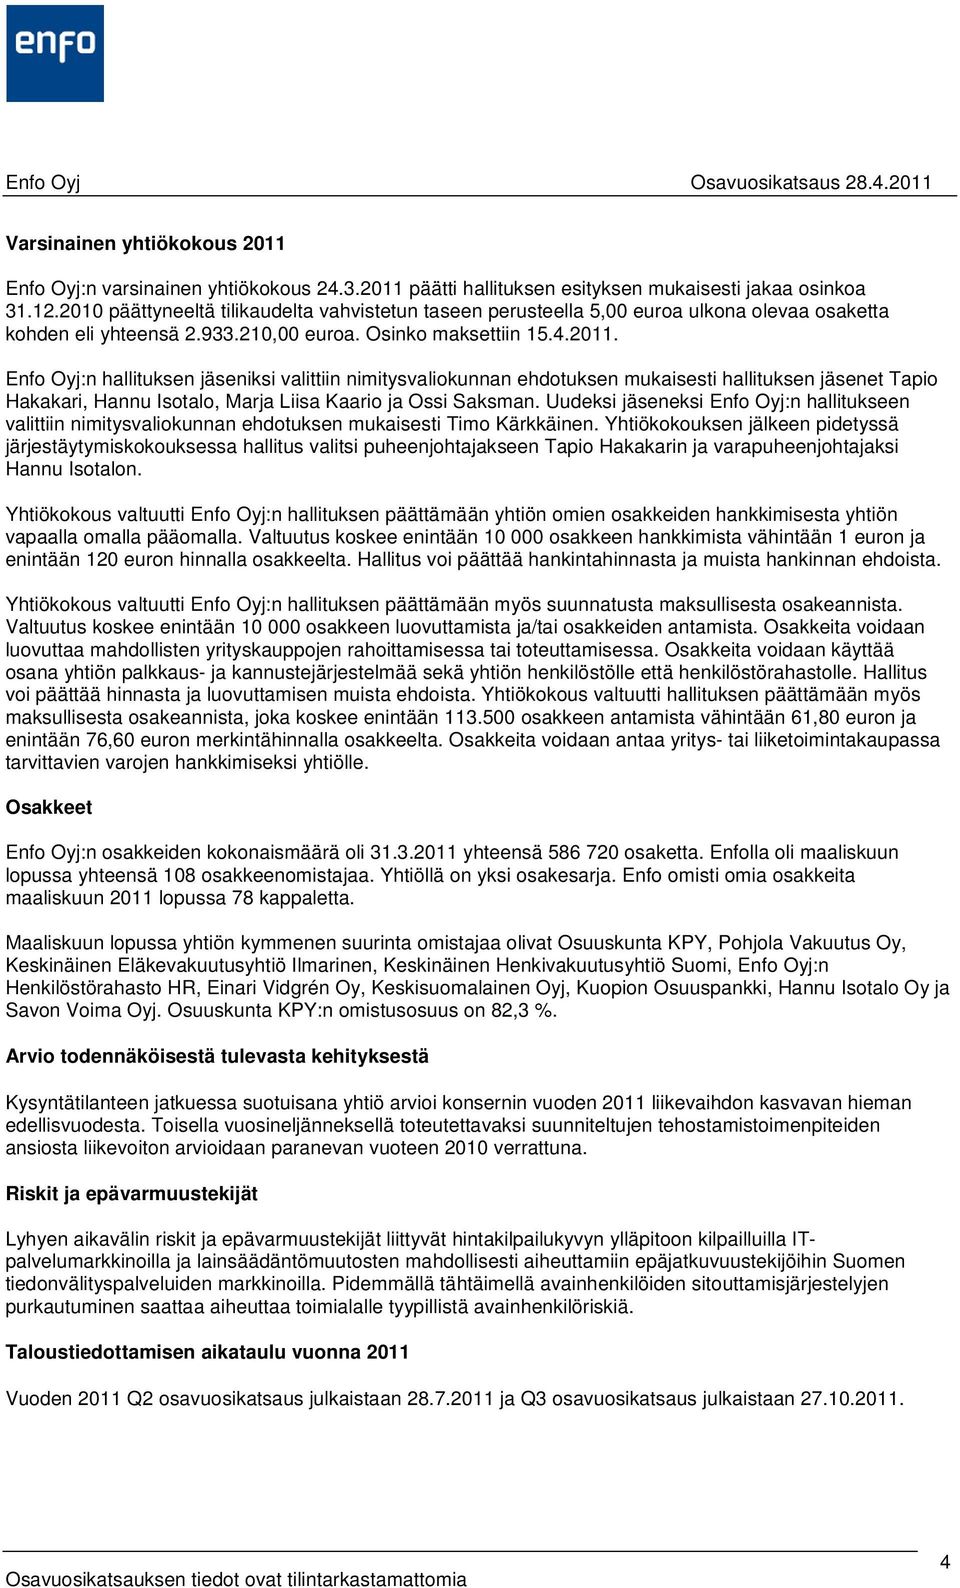 Enfo Oyj:n hallituksen jäseniksi valittiin nimitysvaliokunnan ehdotuksen mukaisesti hallituksen jäsenet Tapio Hakakari, Hannu Isotalo, Marja Liisa Kaario ja Ossi Saksman.